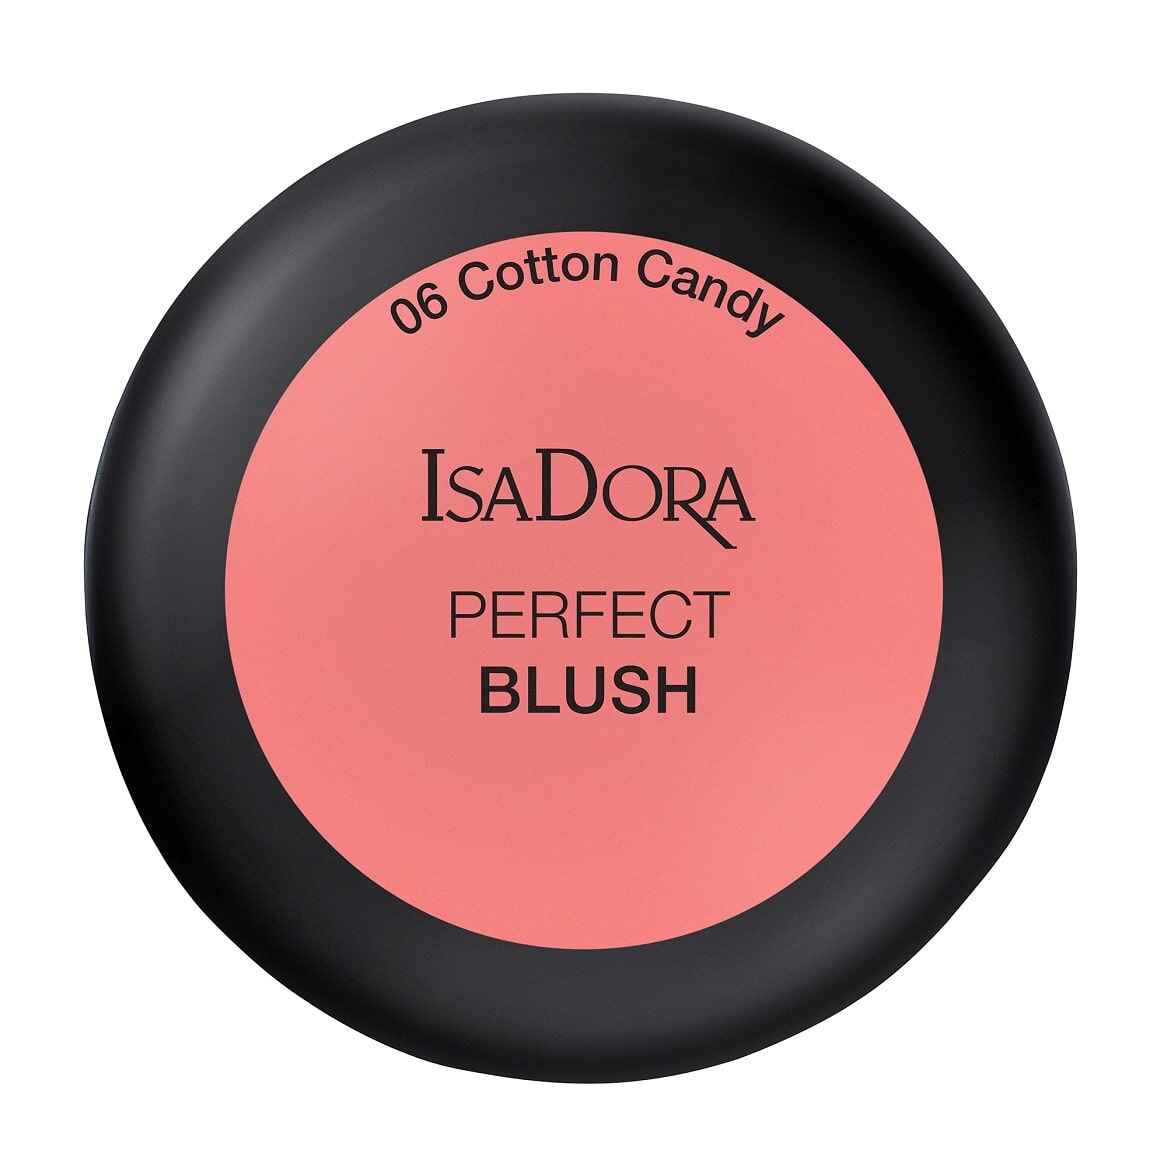 رژ گونه پرفکت بلاش اورجینال برند Isadora رنگ 06 cotton candy